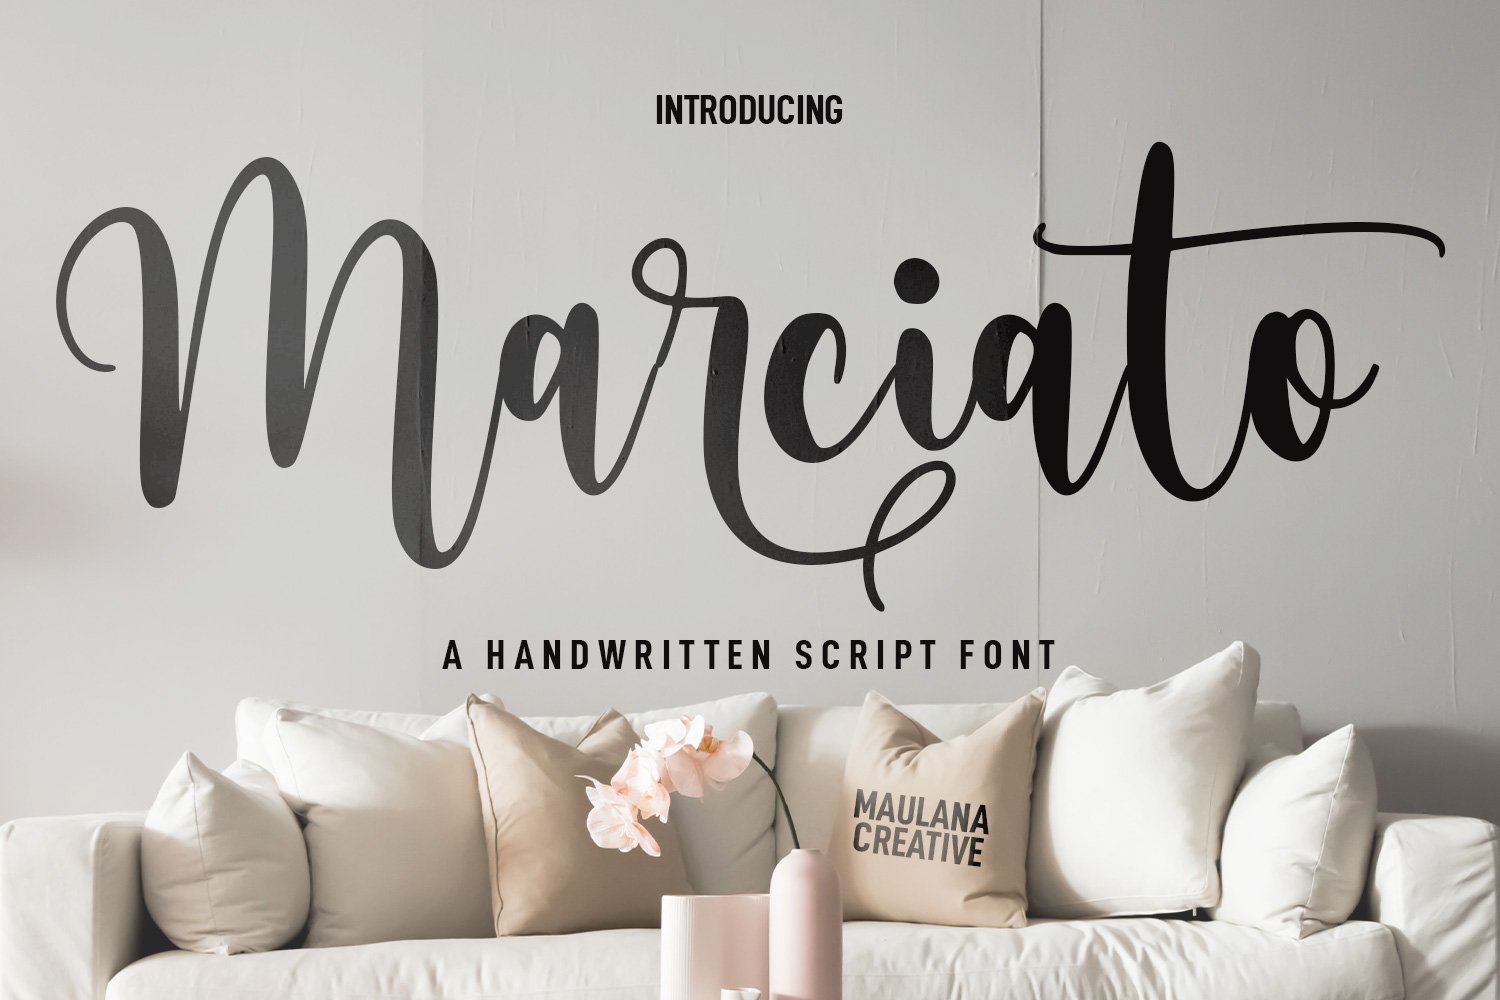 Marciato Script Font cover image.